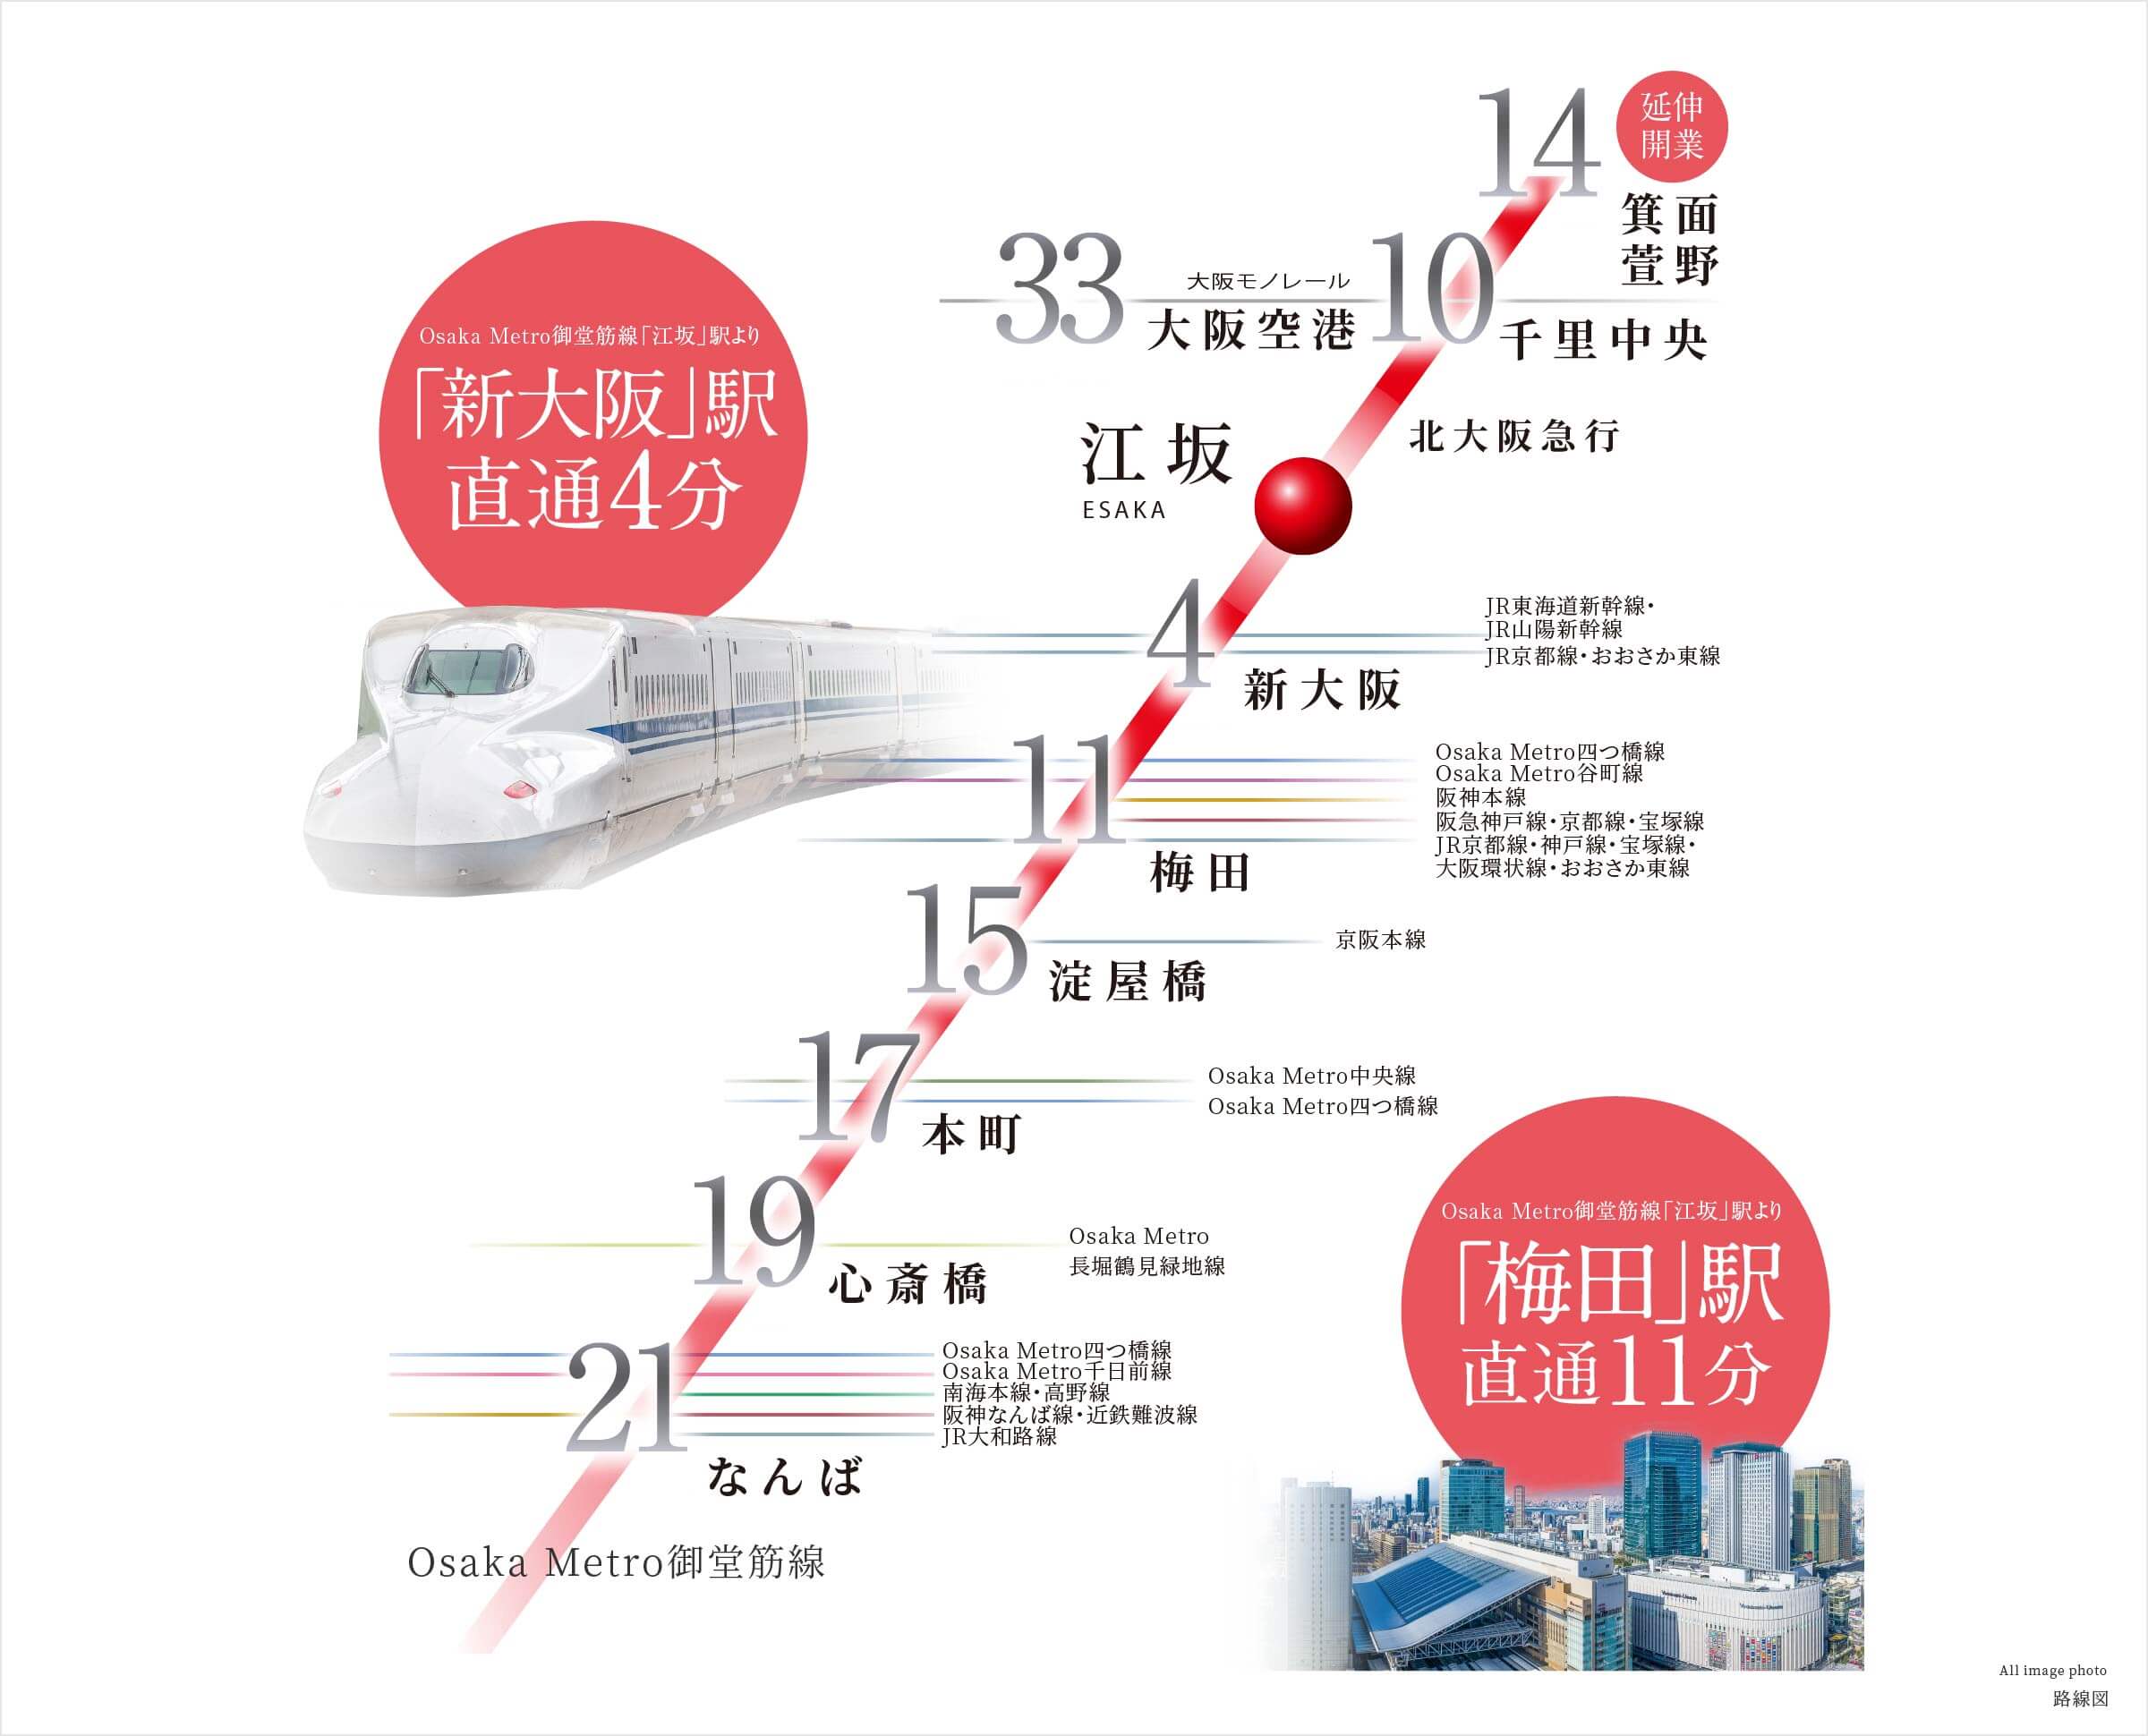 大阪メトロ御堂筋線の路線図 各駅への所要時間